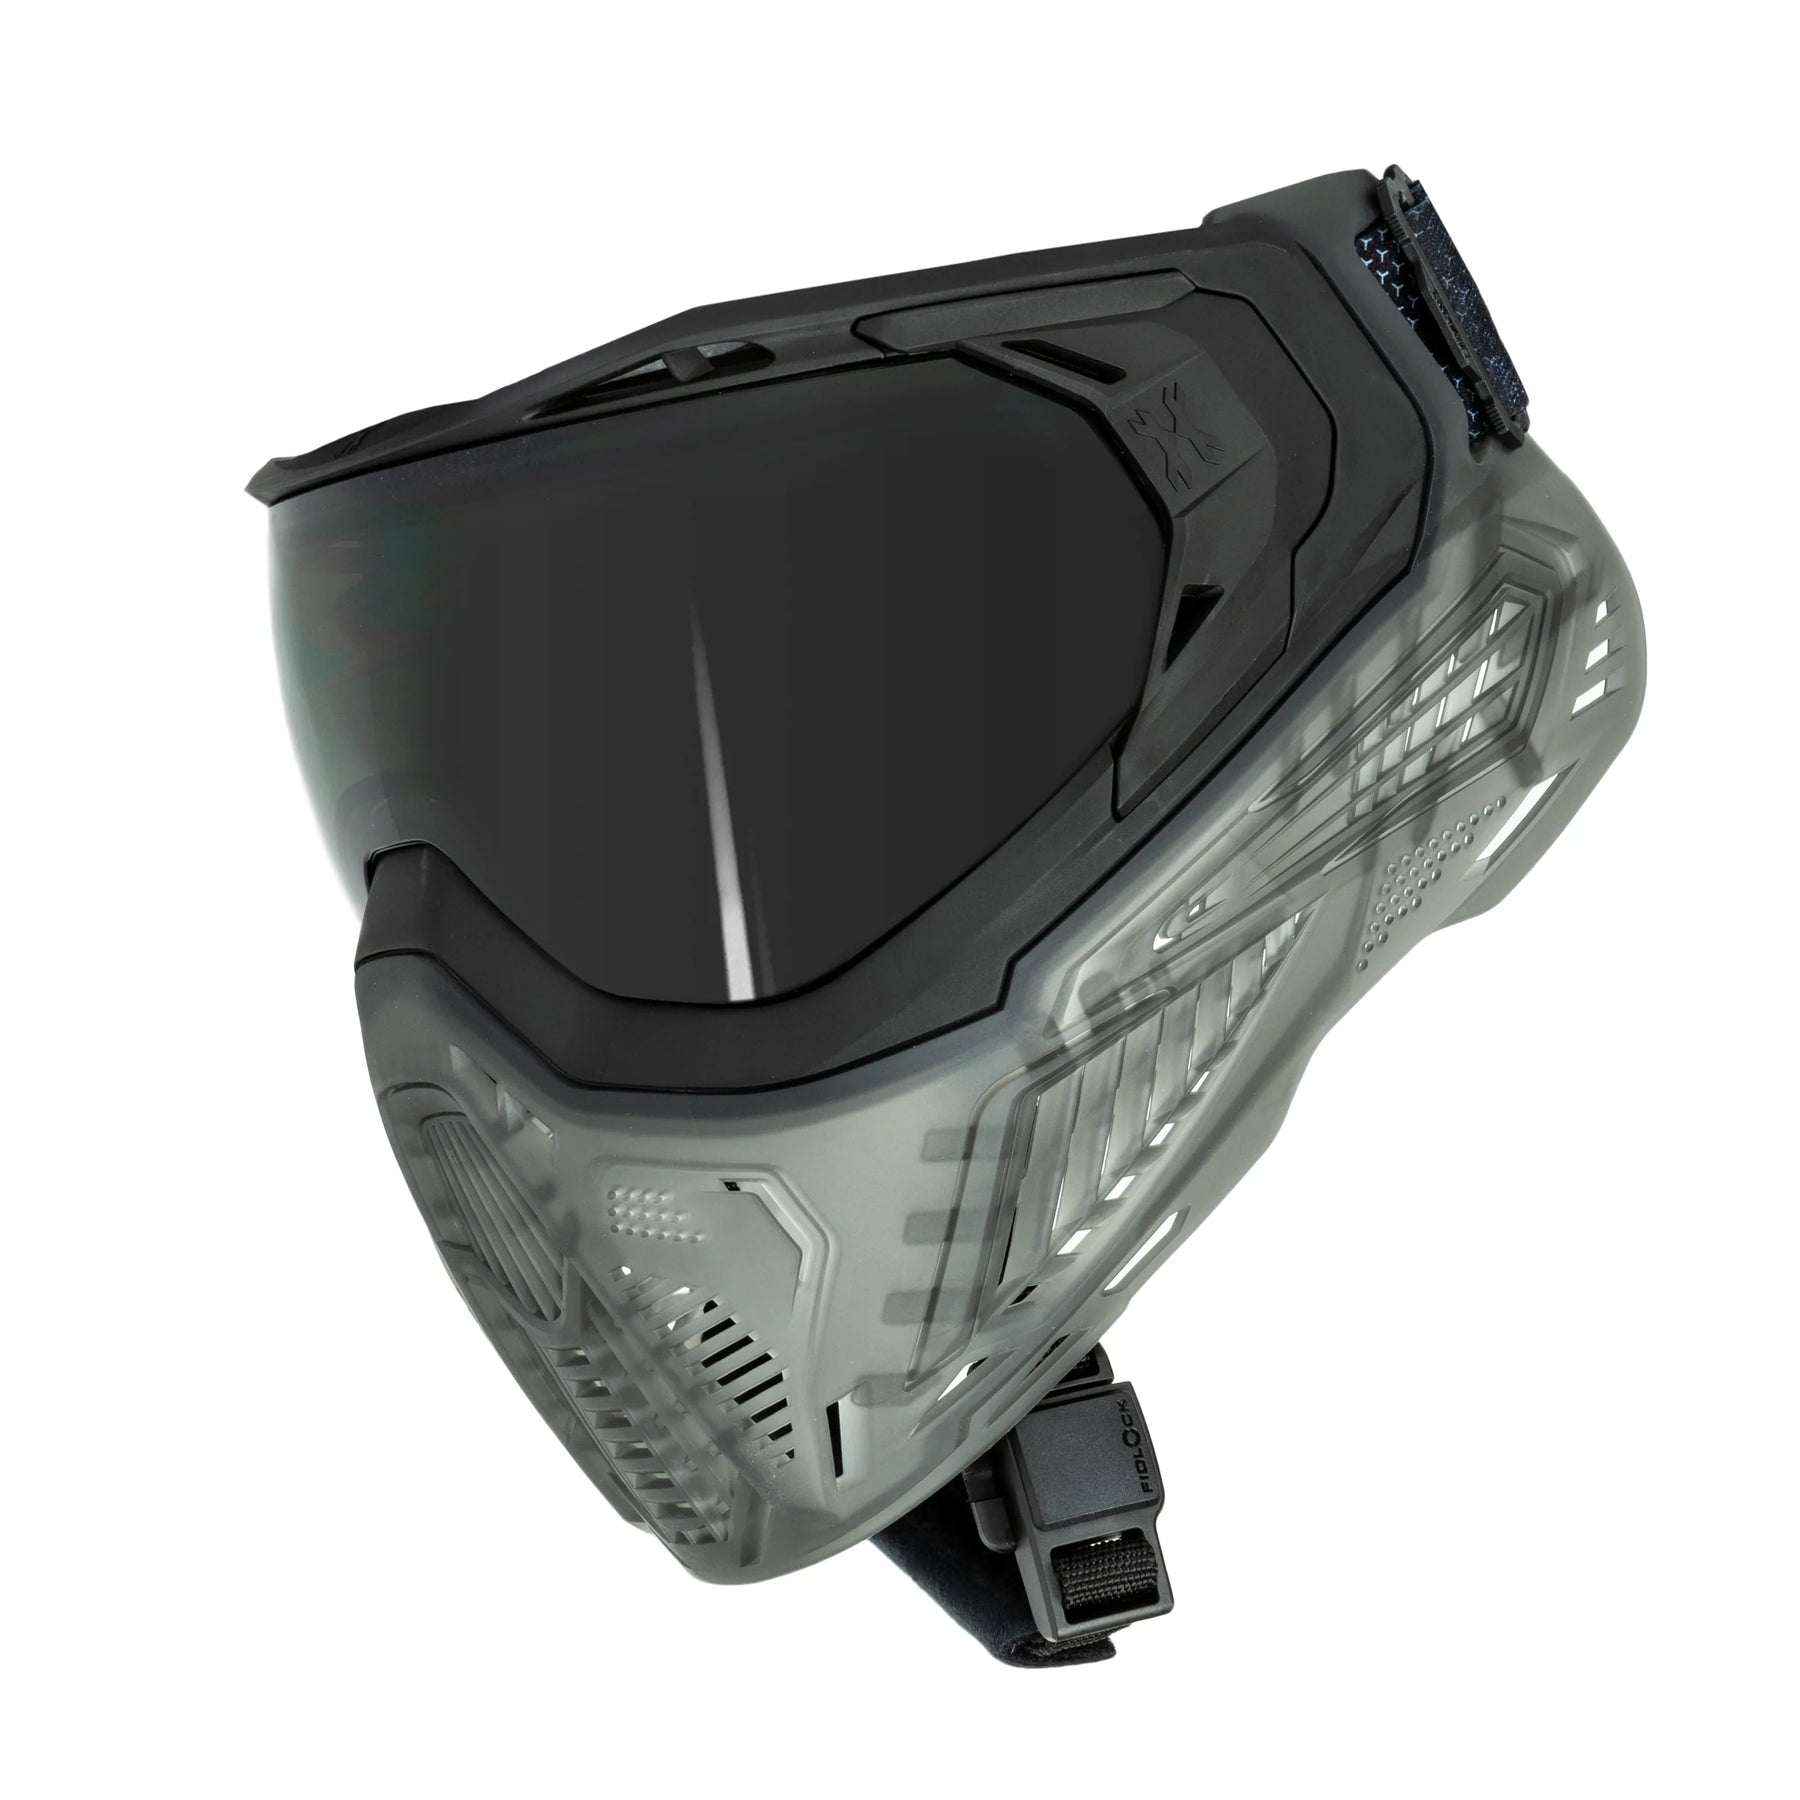 Slr Goggle - Ash - Smoke Lens | Paintball Goggle | Mask | Hk Army